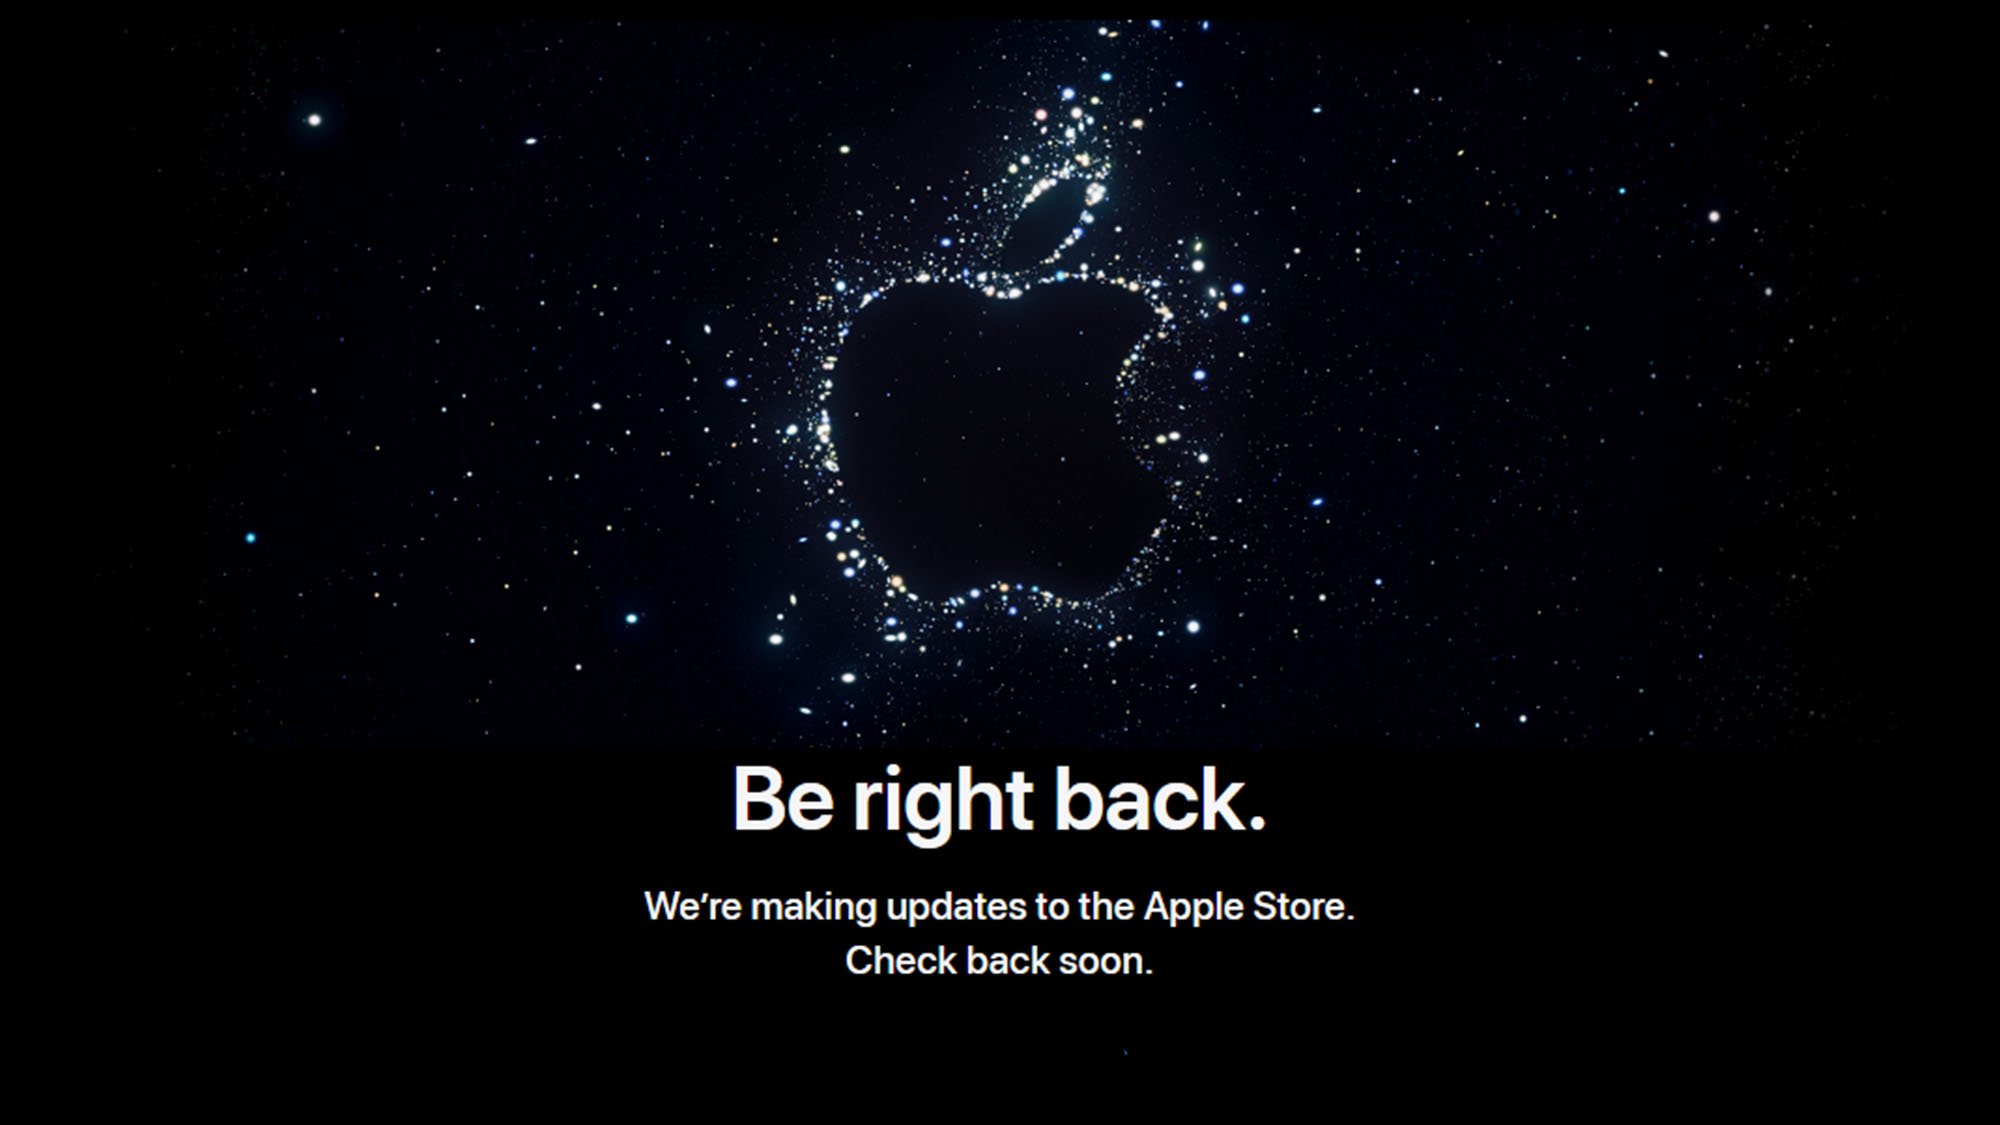 Страница магазина Apple, в настоящее время недоступная в связи с предстоящим событием 7 сентября 2022 года, на которой отмечены слова «скоро вернусь»